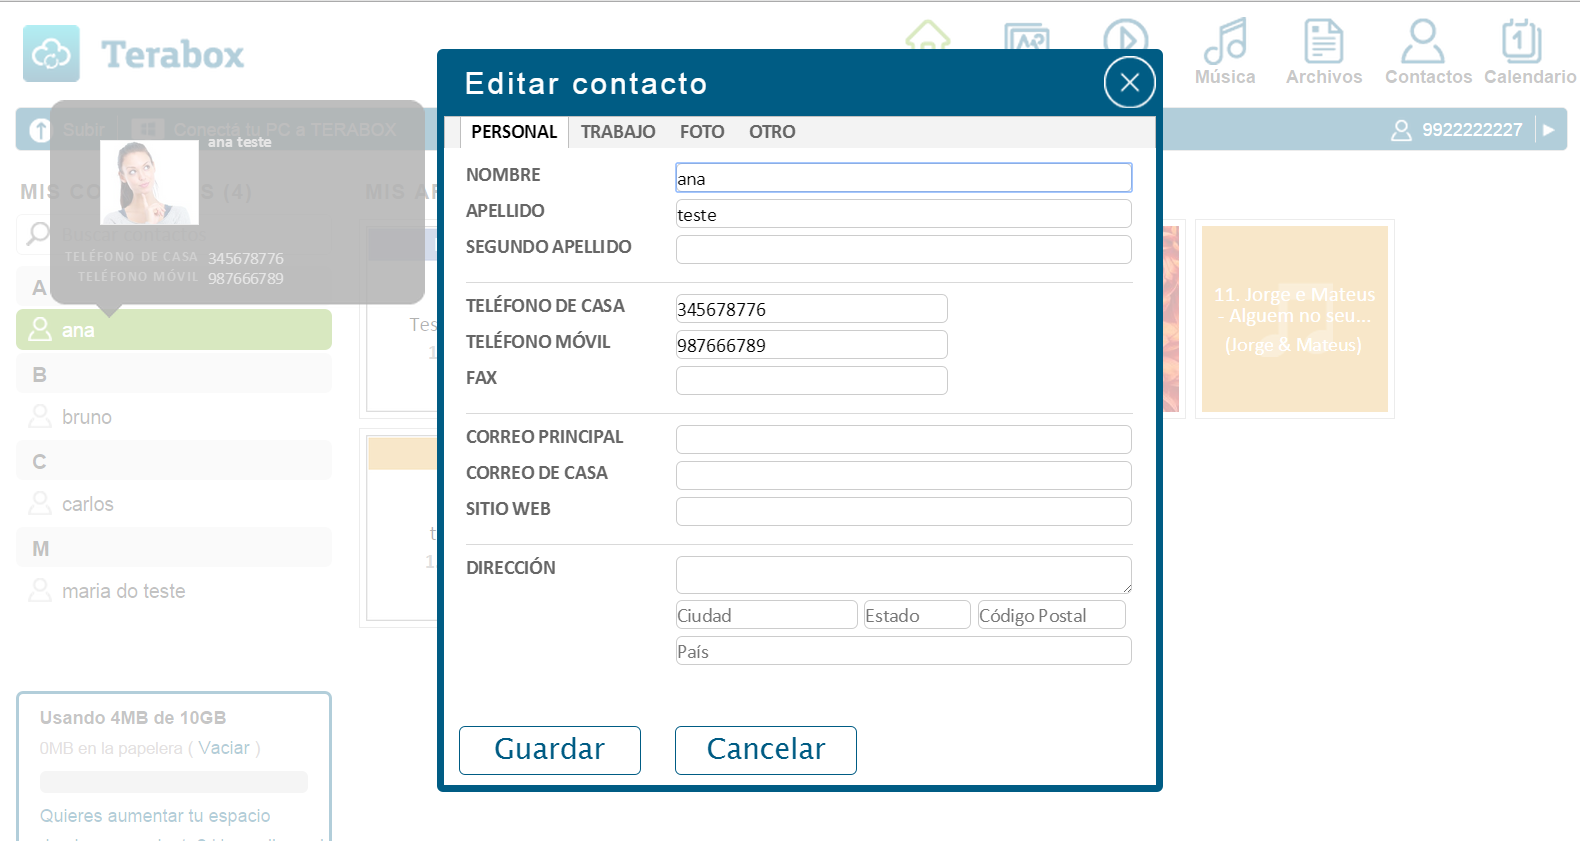 3.1.7 Editar Contacto Puede editar un contacto ya existente en el Portal Web y sincronizar con Windows, Mac, Smartphones y Tablets.